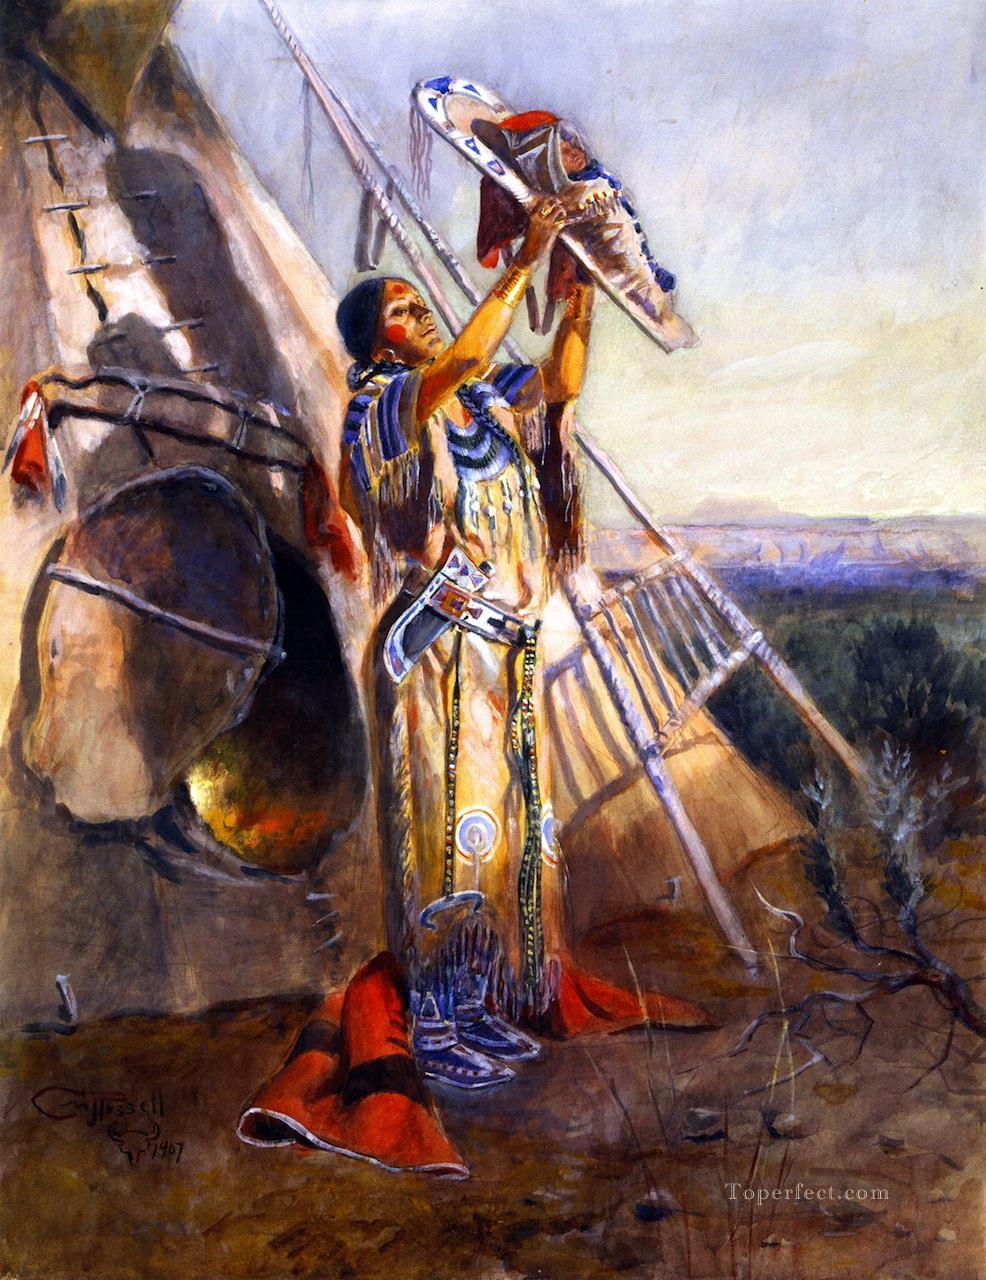 Adoración al sol en Montana 1907 Charles Marion Russell Pintura al óleo